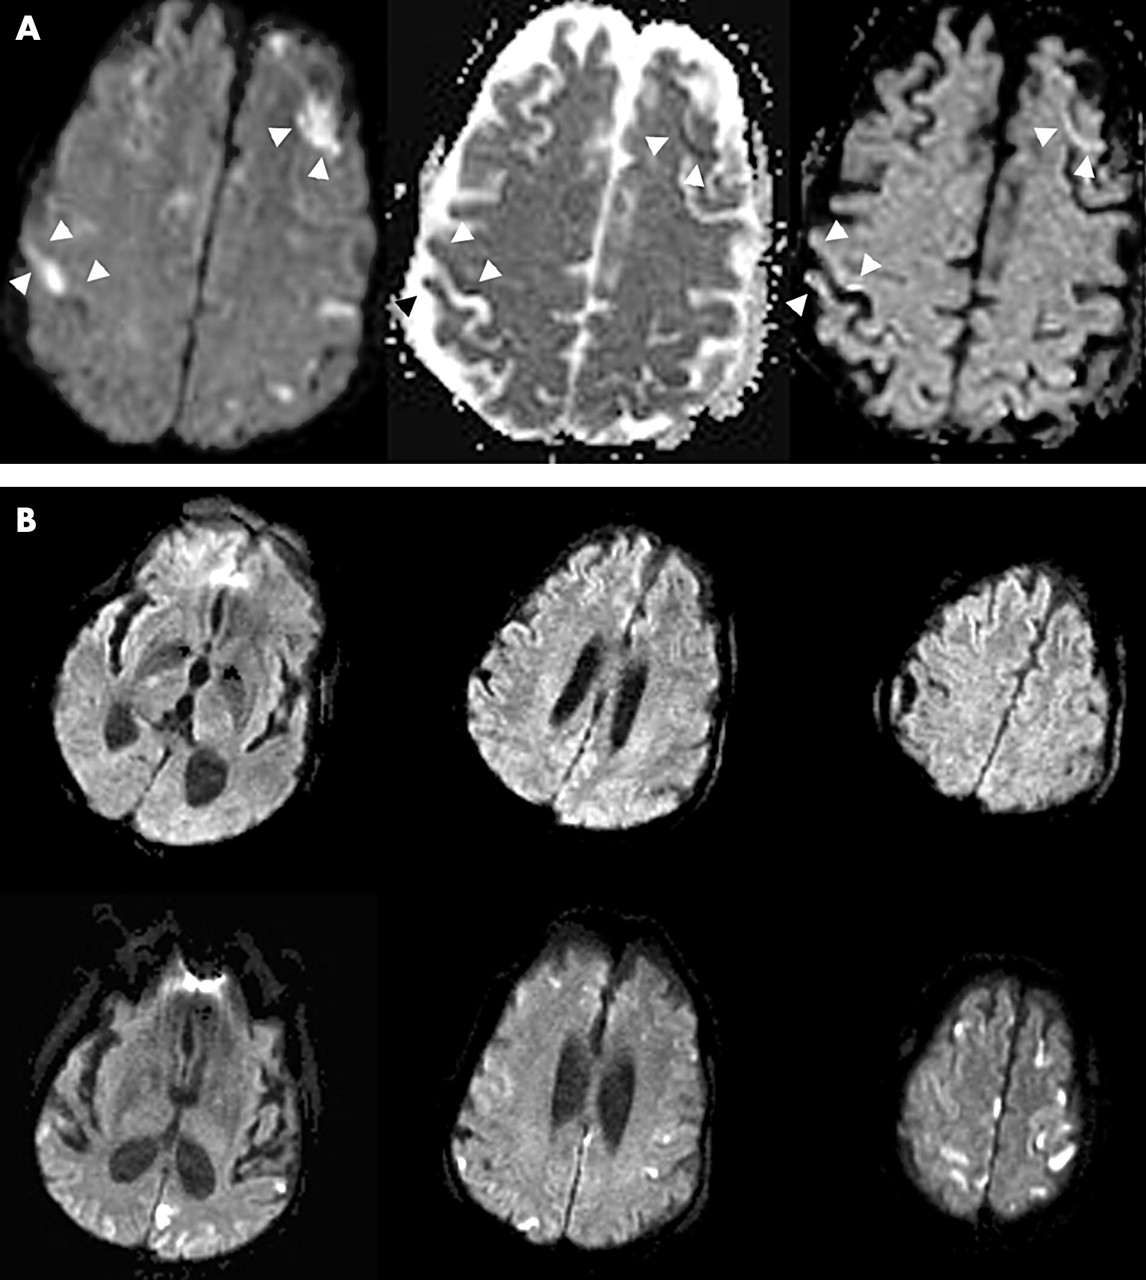 МРТ при лимфоме мозга - протокол, признаки на МРТ снимках